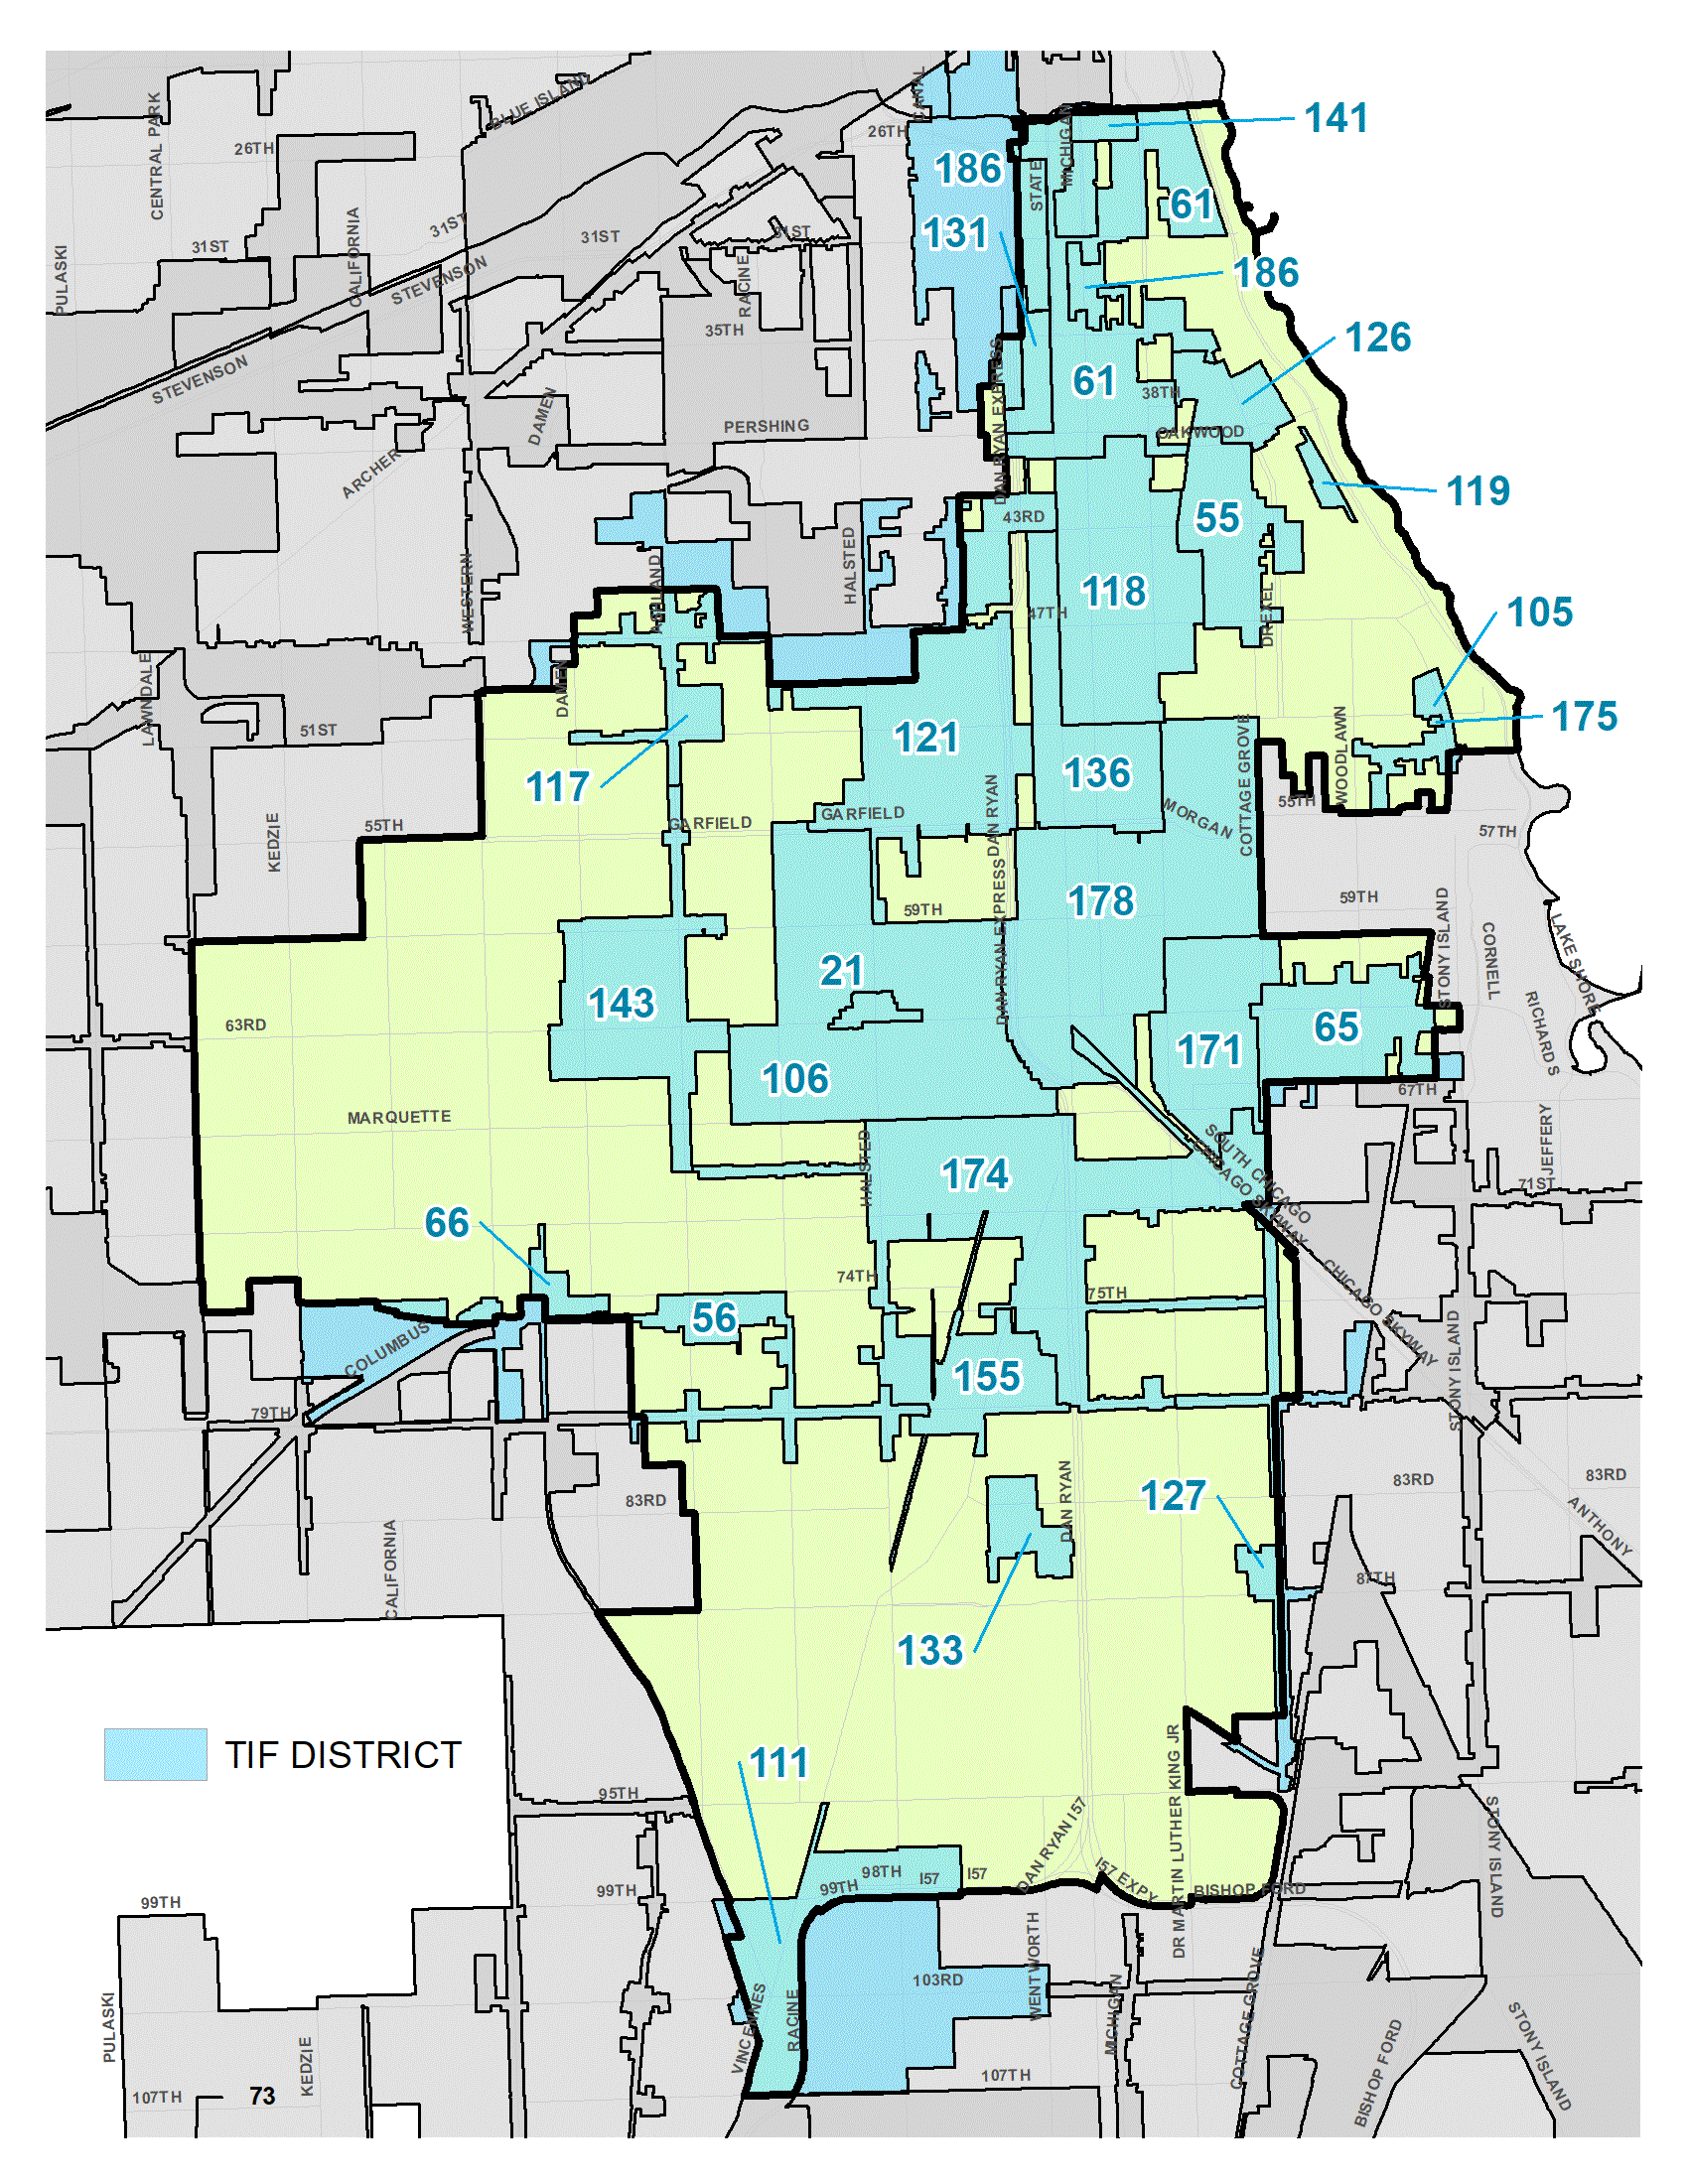 South Side TIF District Map